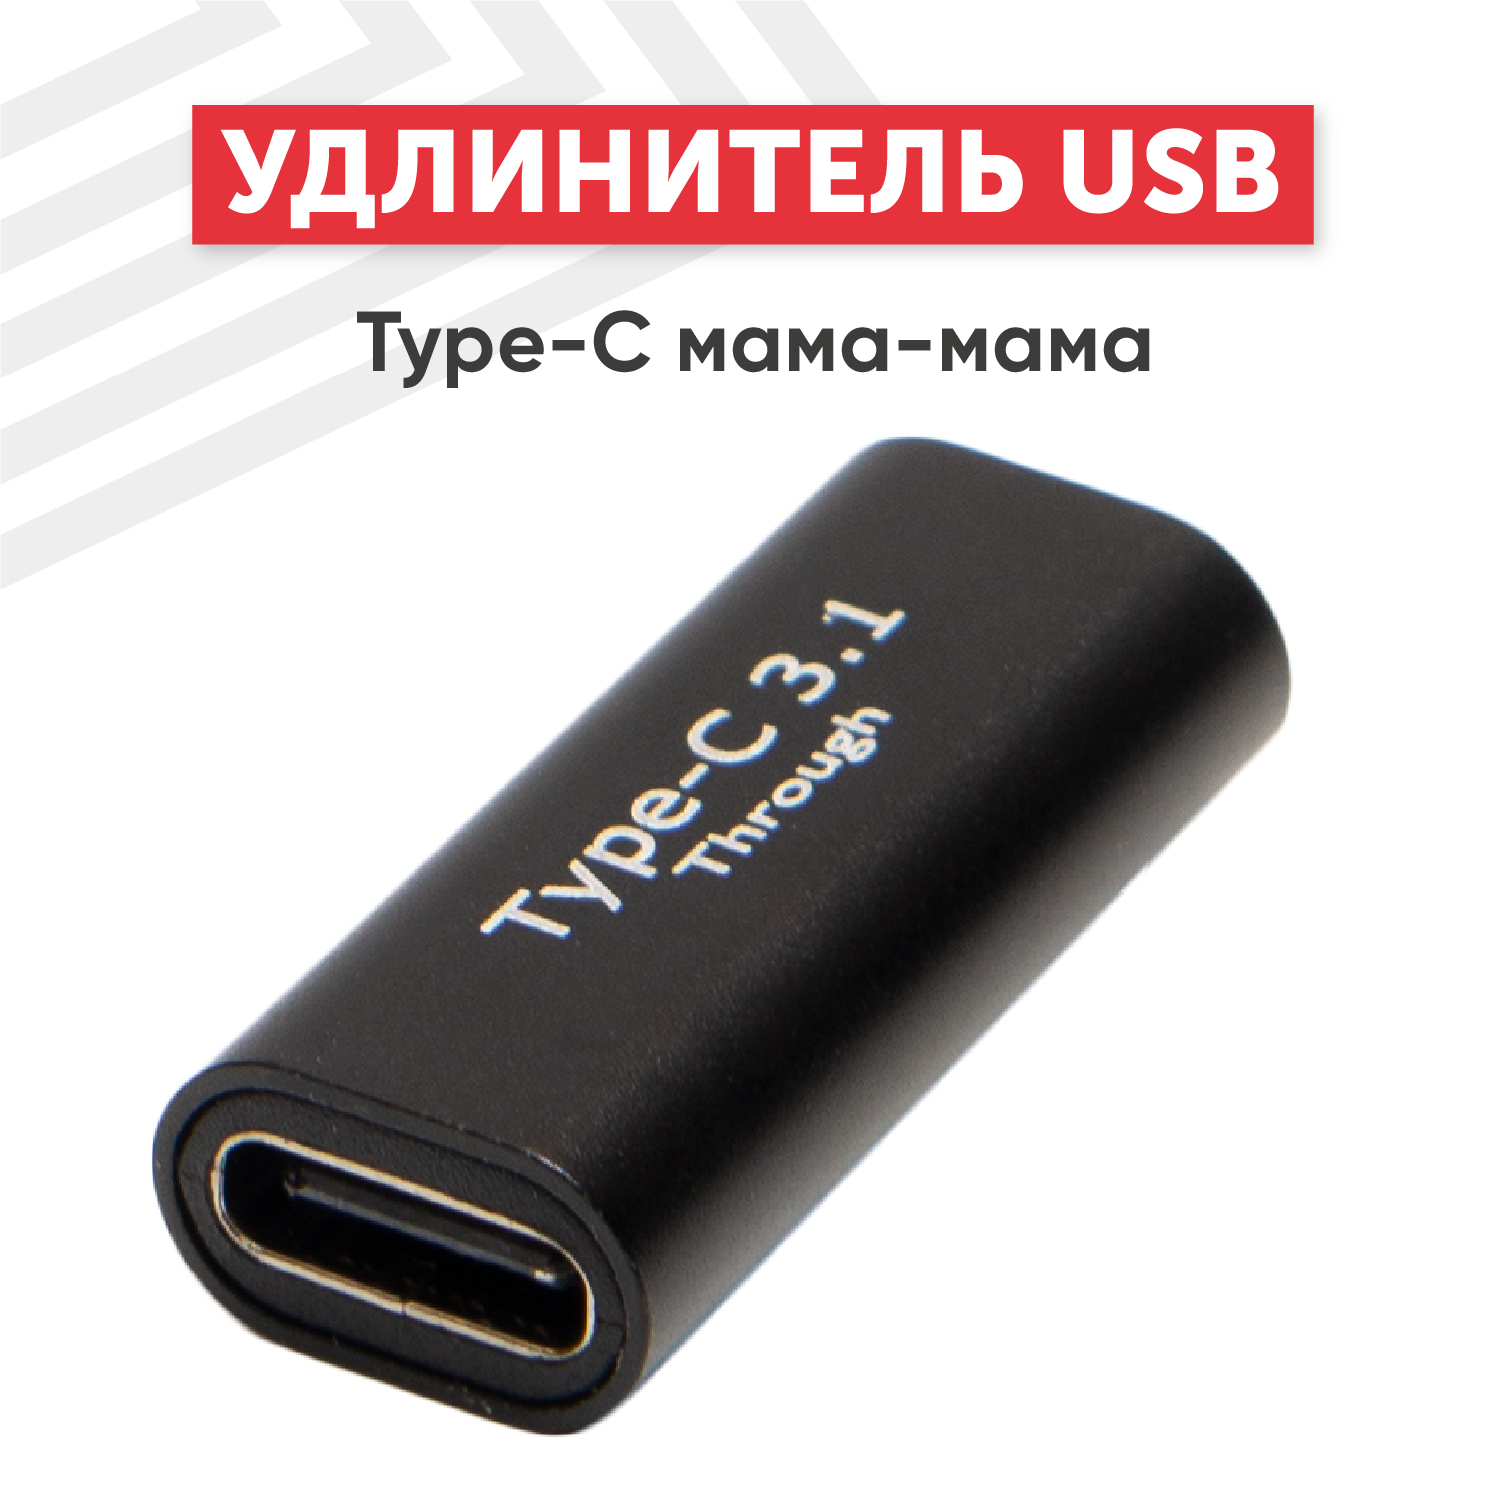 Переходник (коннектор, сетевой адаптер) USB 3.0 Type-C мама-мама для смартфона, планшета, ноутбука